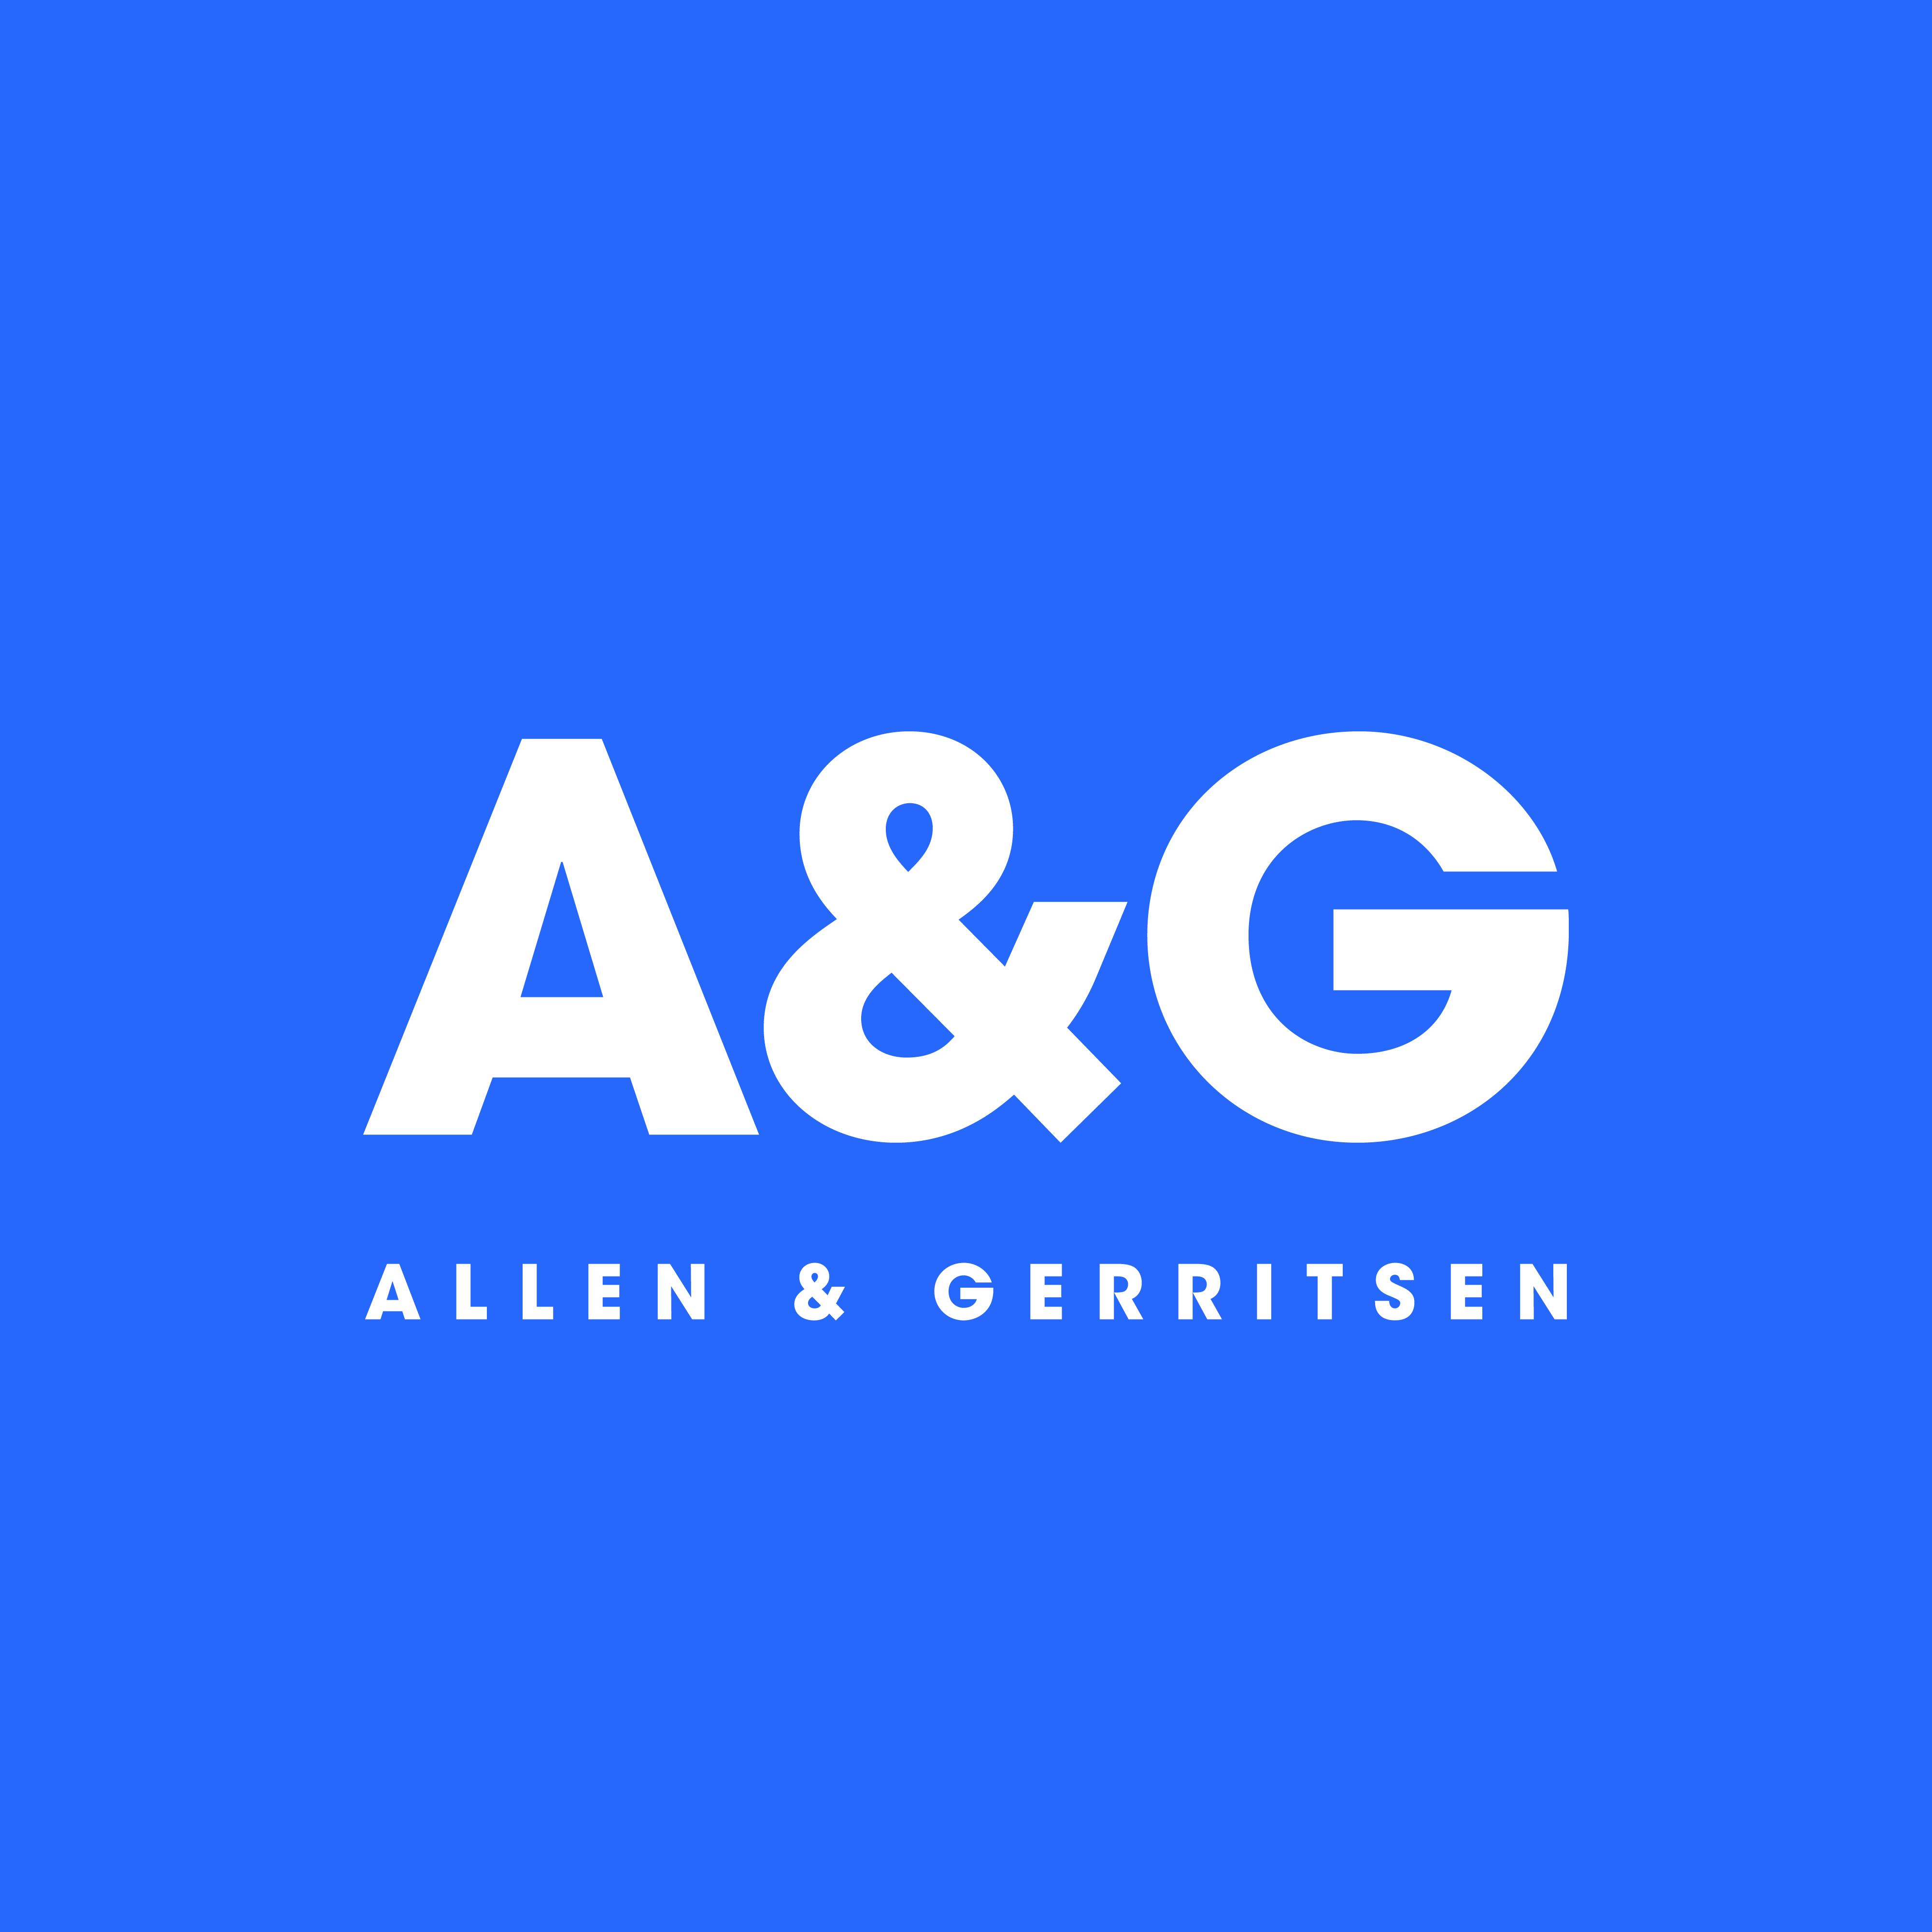 Allen & Gerritsen